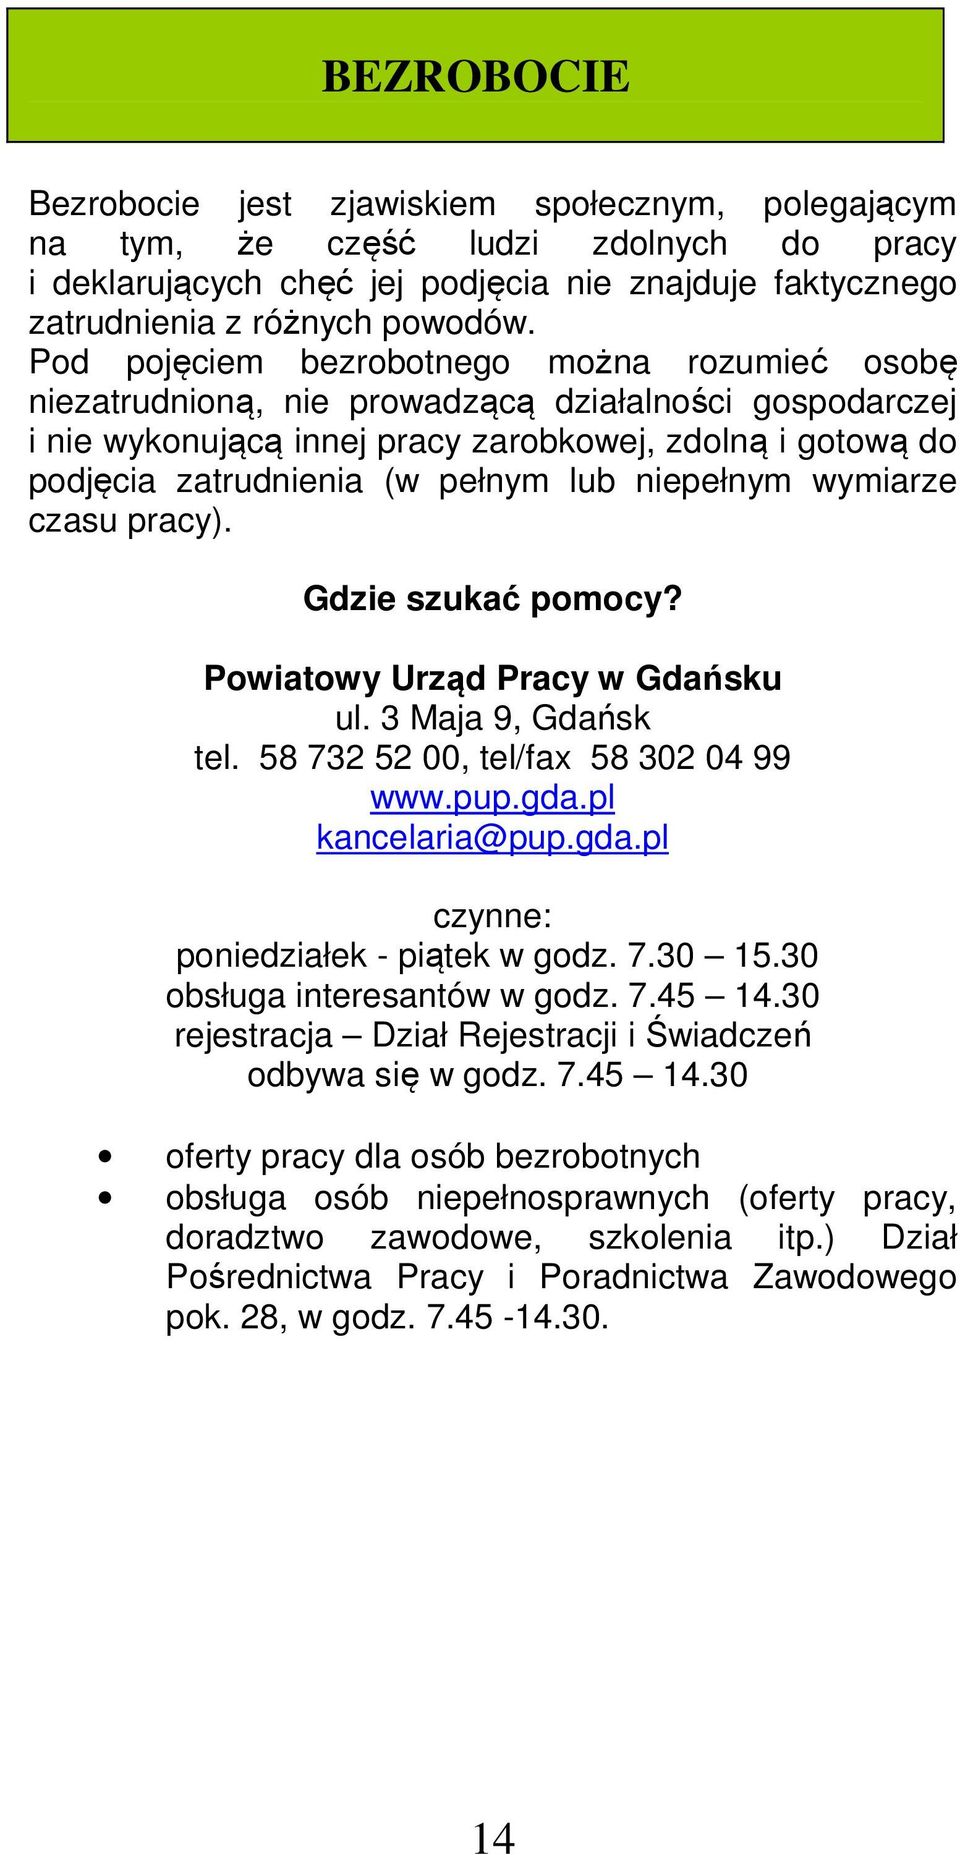 niepełnym wymiarze czasu pracy). Gdzie szukać pomocy? Powiatowy Urząd Pracy w Gdańsku ul. 3 Maja 9, Gdańsk tel. 58 732 52 00, tel/fax 58 302 04 99 www.pup.gda.pl kancelaria@pup.gda.pl poniedziałek - piątek w godz.